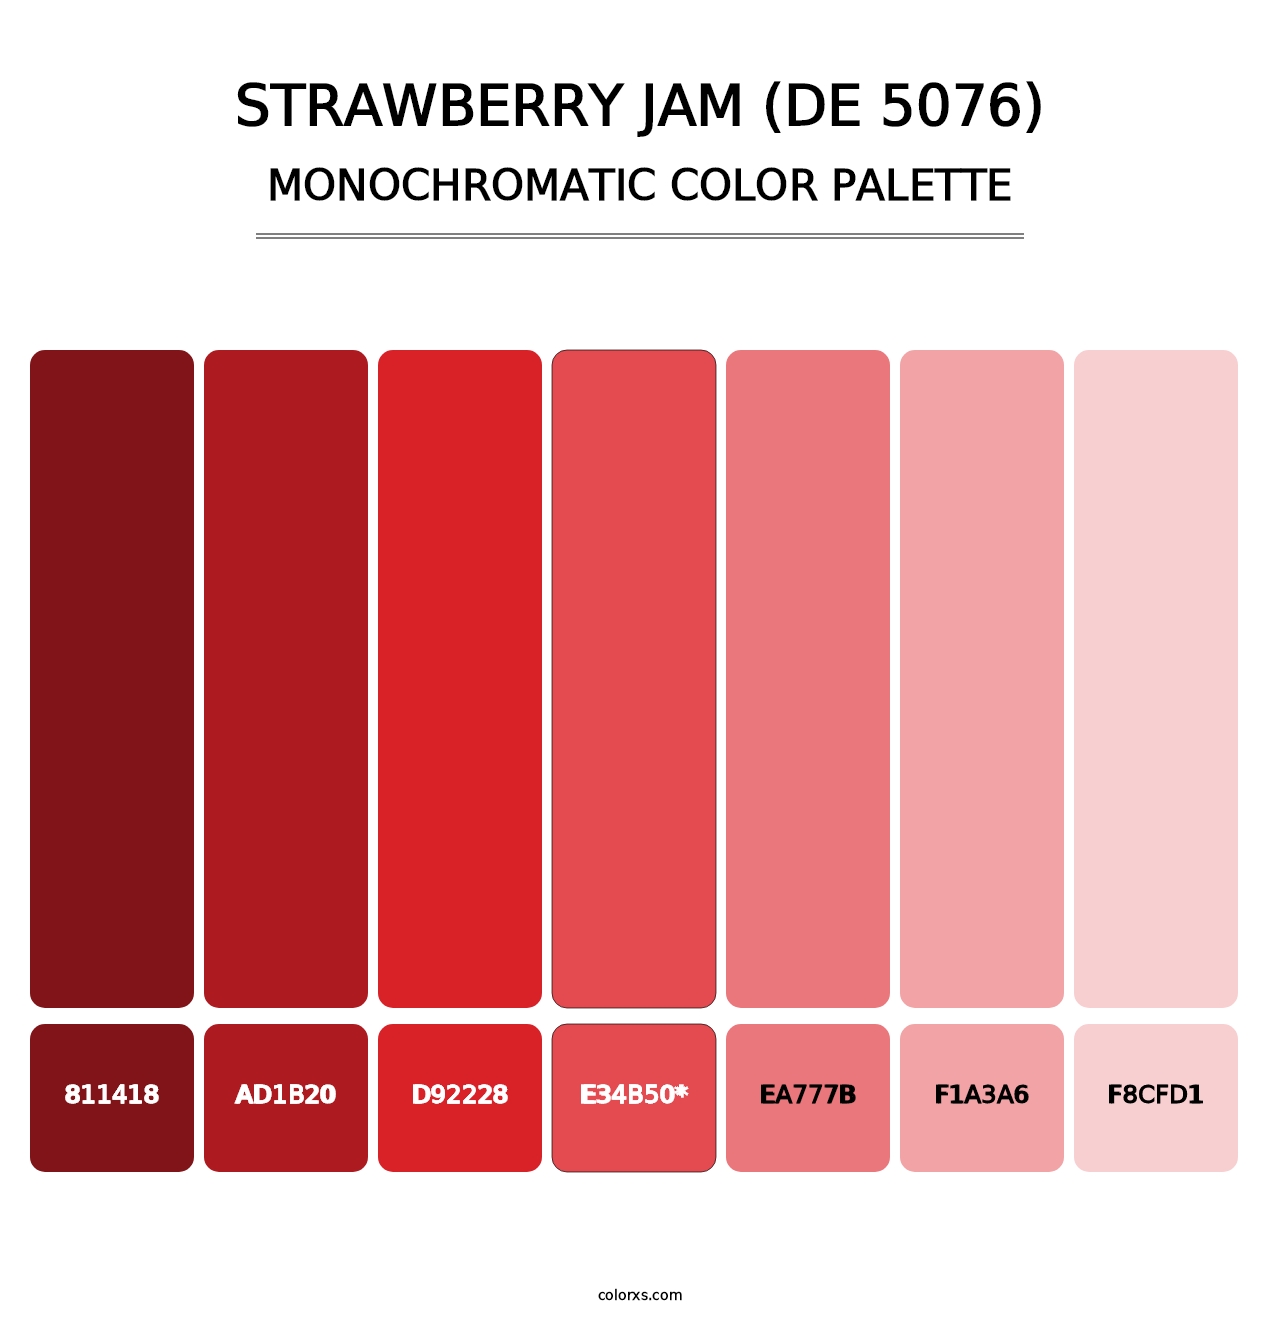 Strawberry Jam (DE 5076) - Monochromatic Color Palette